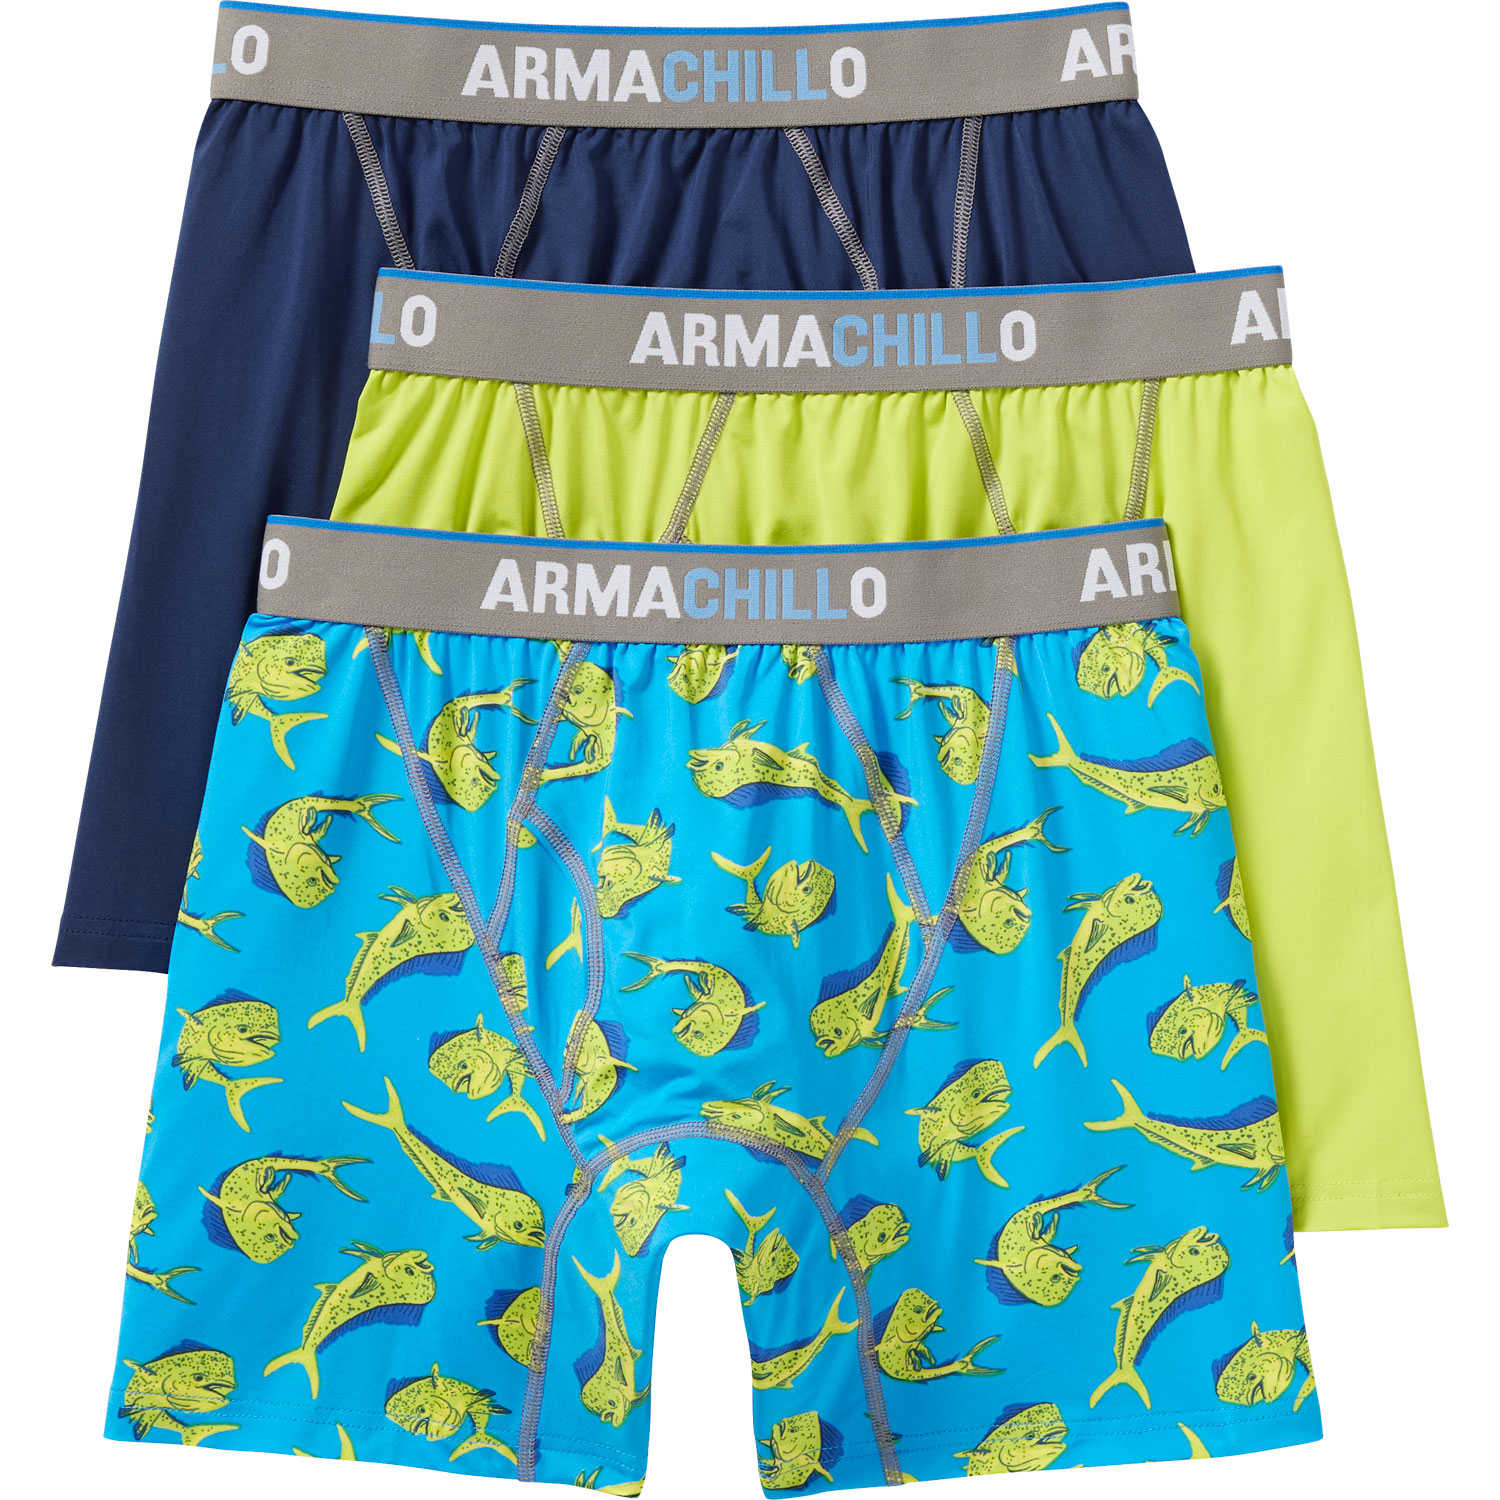 Women's Armachillo Boyshort Underwear